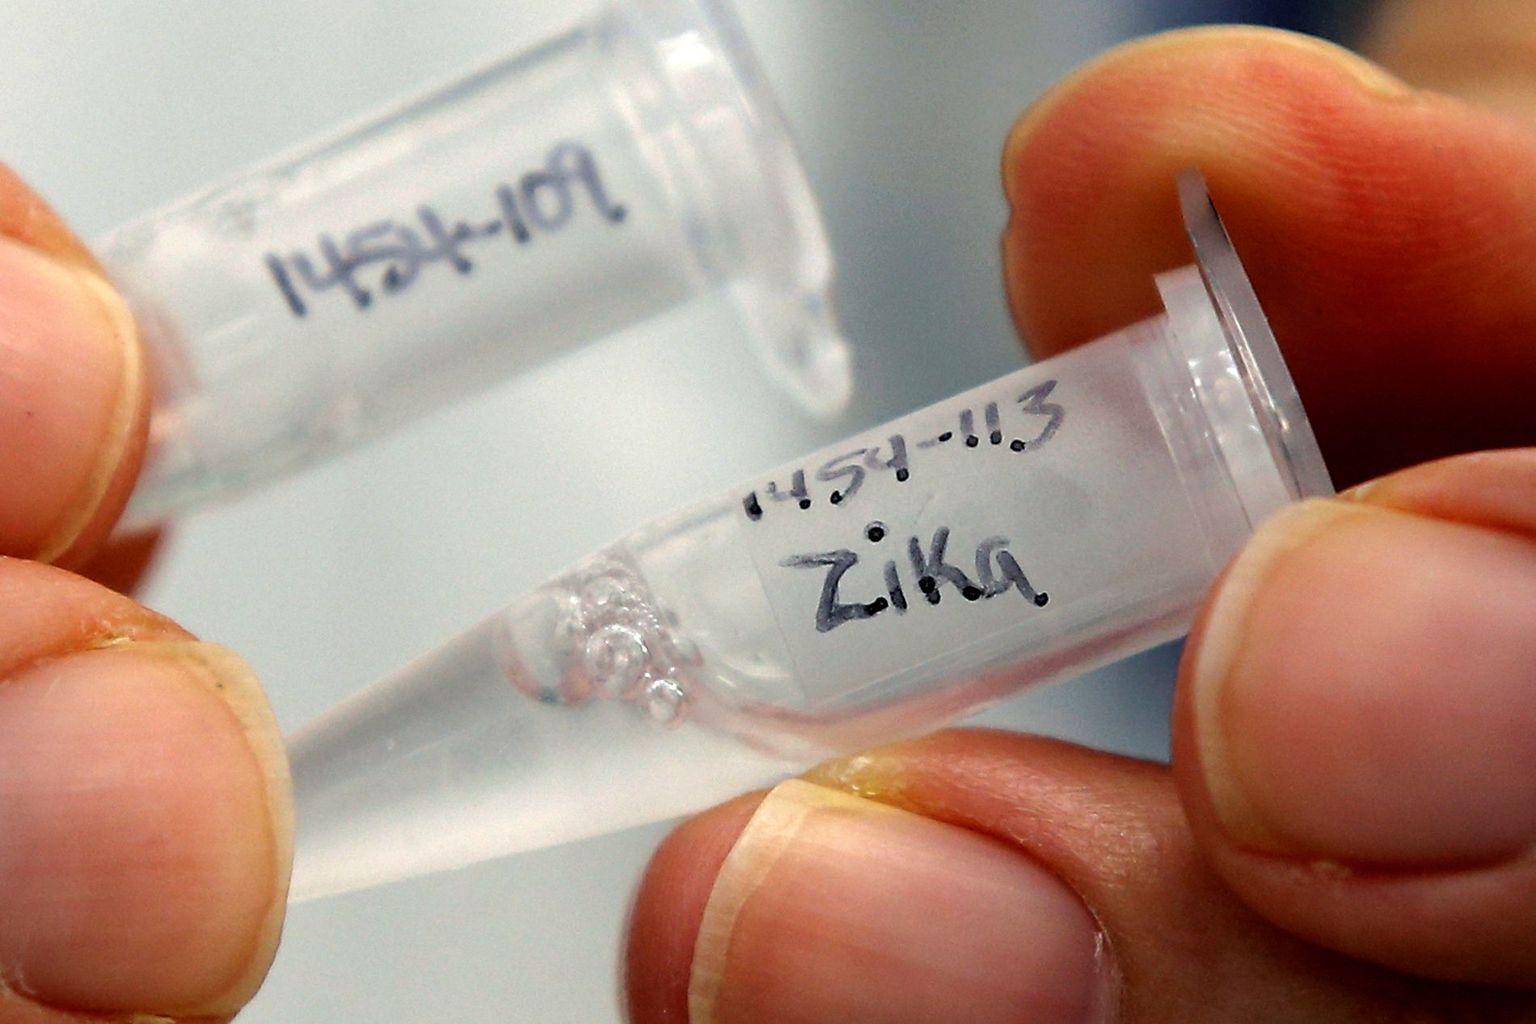 Tartu teadlased on koostöös Helsingi kolleegidega jõudnud väga lähedale Zika vaktsiinile. Pilt on illustreeriv.